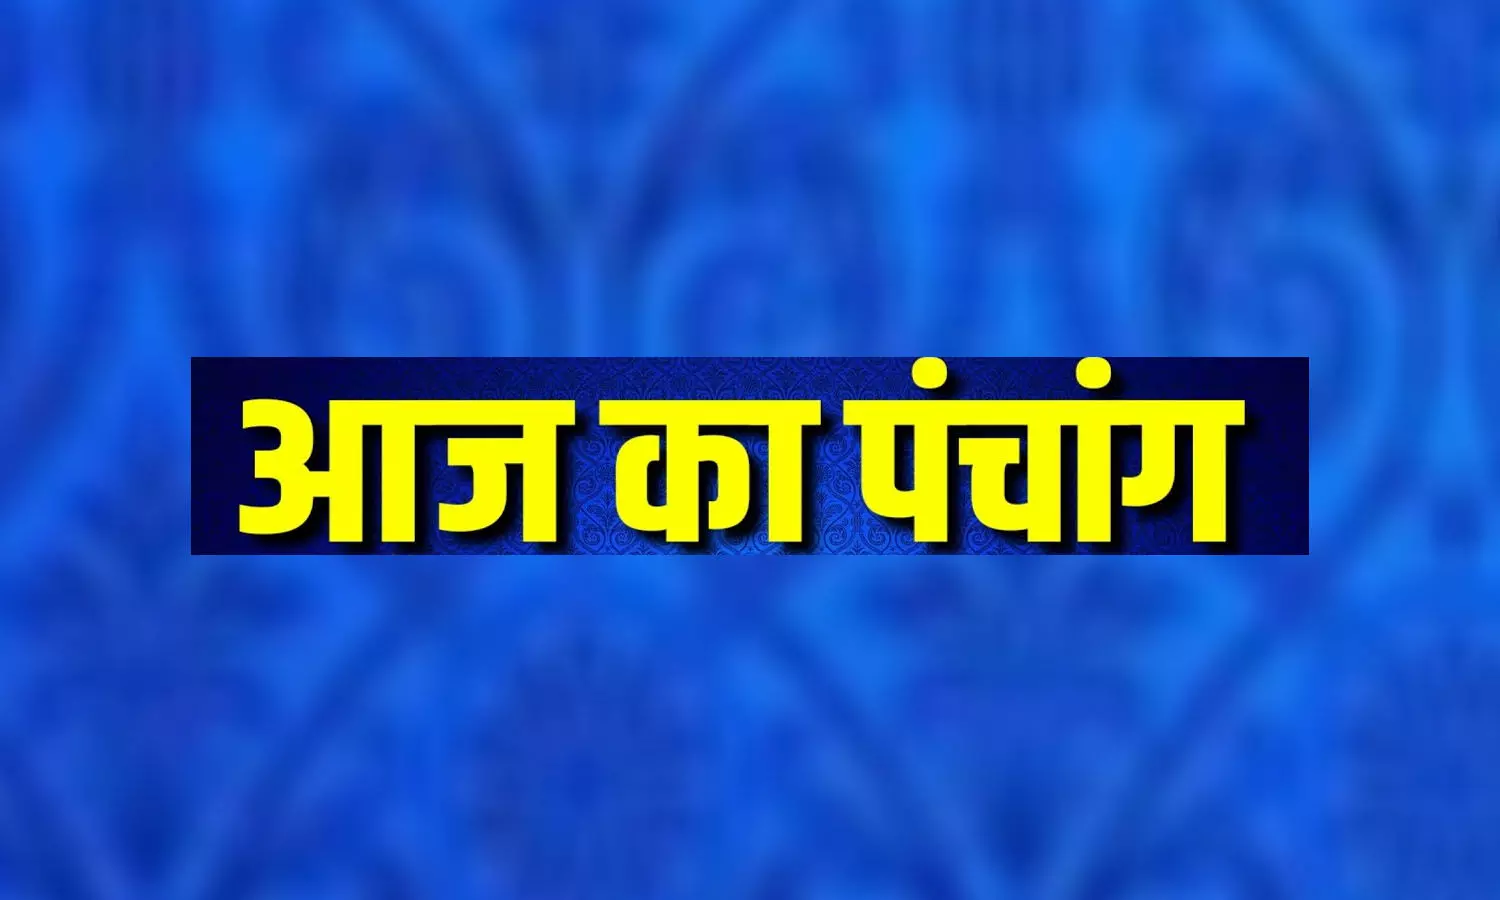 24 February 2023 Ka Panchang Tithi in Hindi : आज  कालवेला,गुलिक और यमगंड का समय कब से कब है, जानने के लिए देखिए आज का पंचांग ..